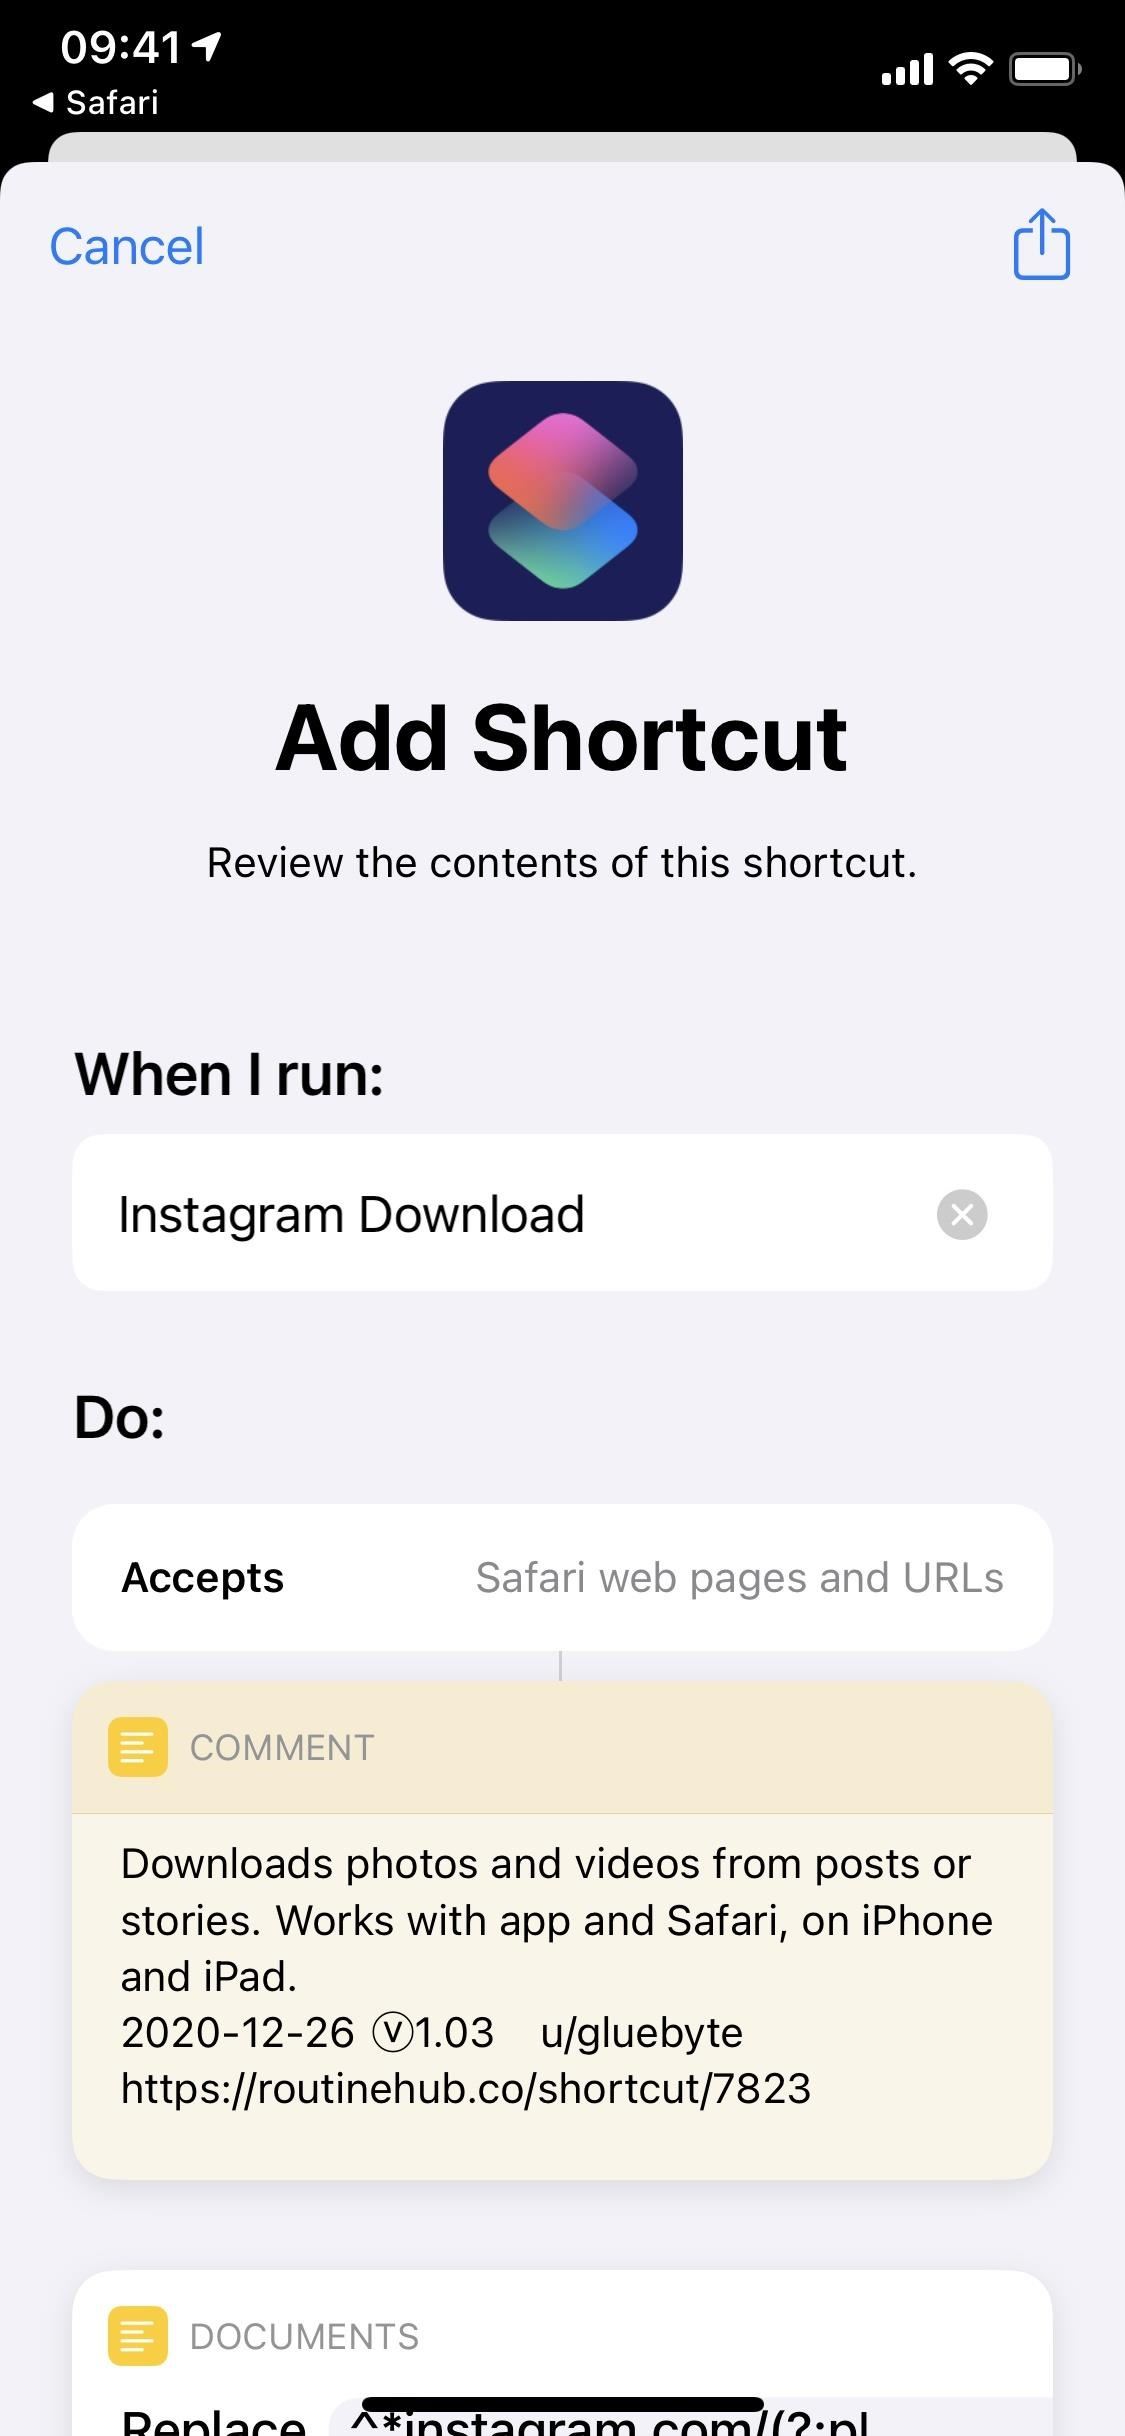 download instagram videos iphone